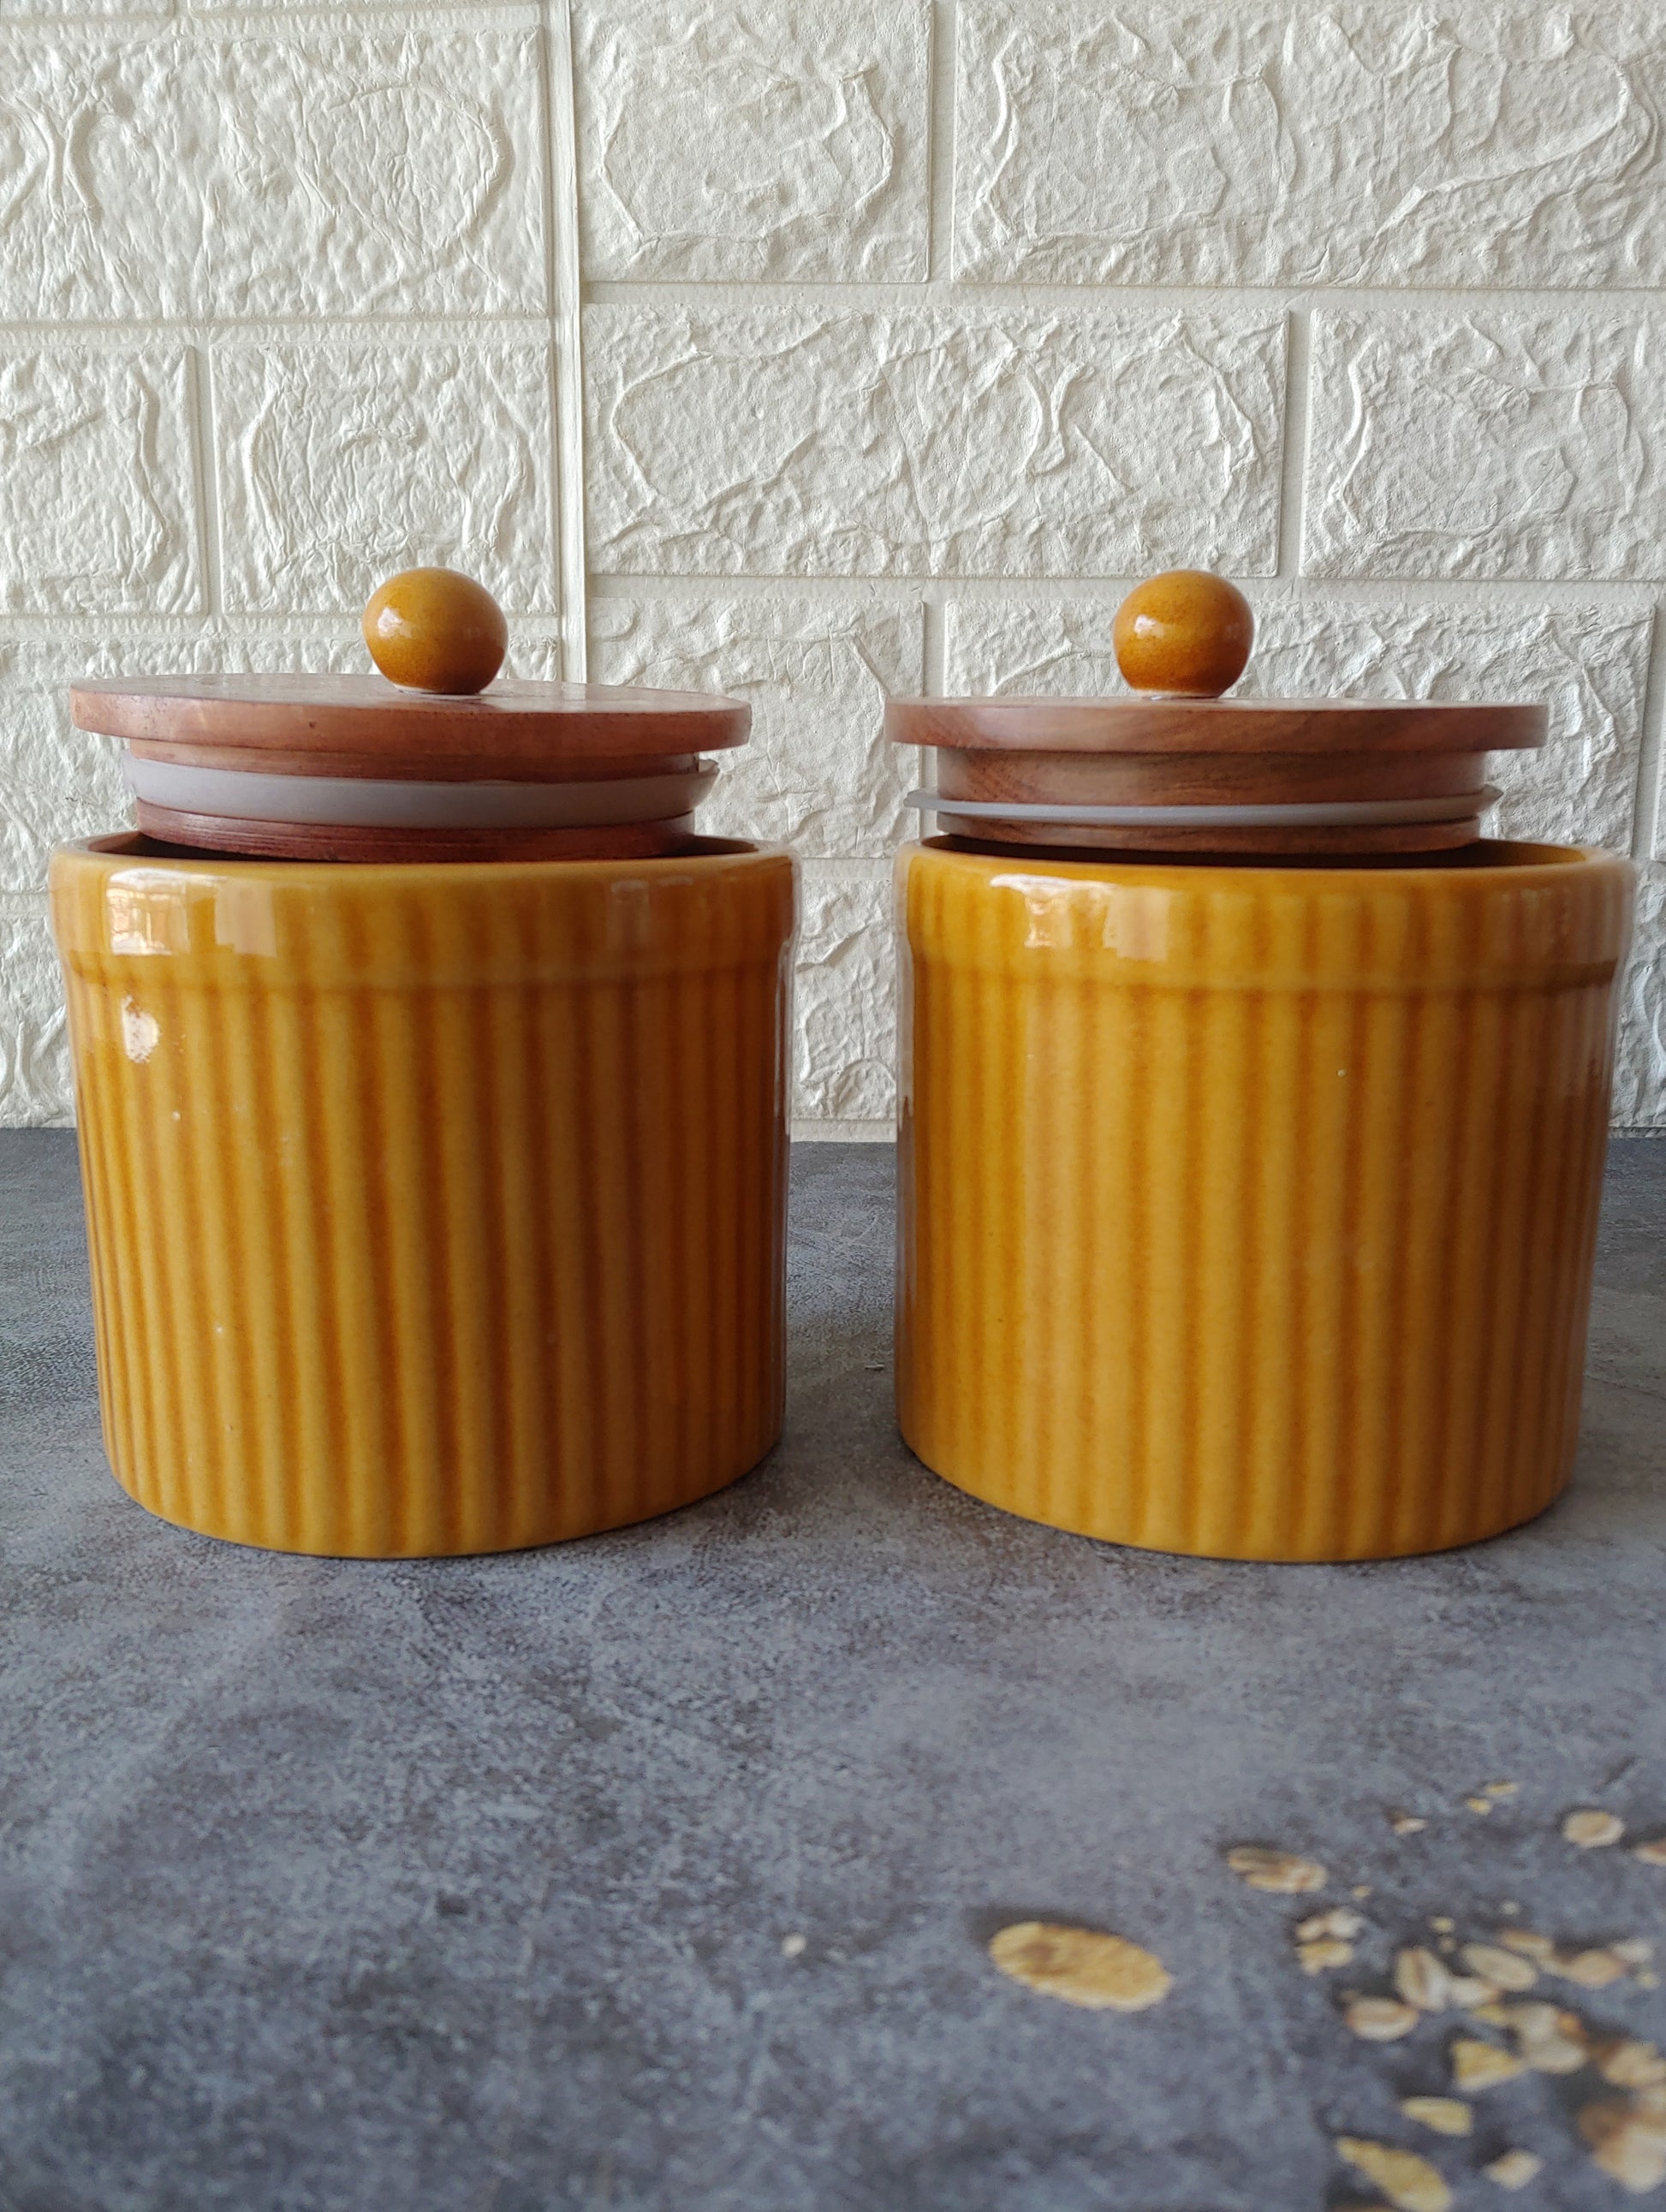 Honey Ceramic Airtight container 1/2 kg set of 2